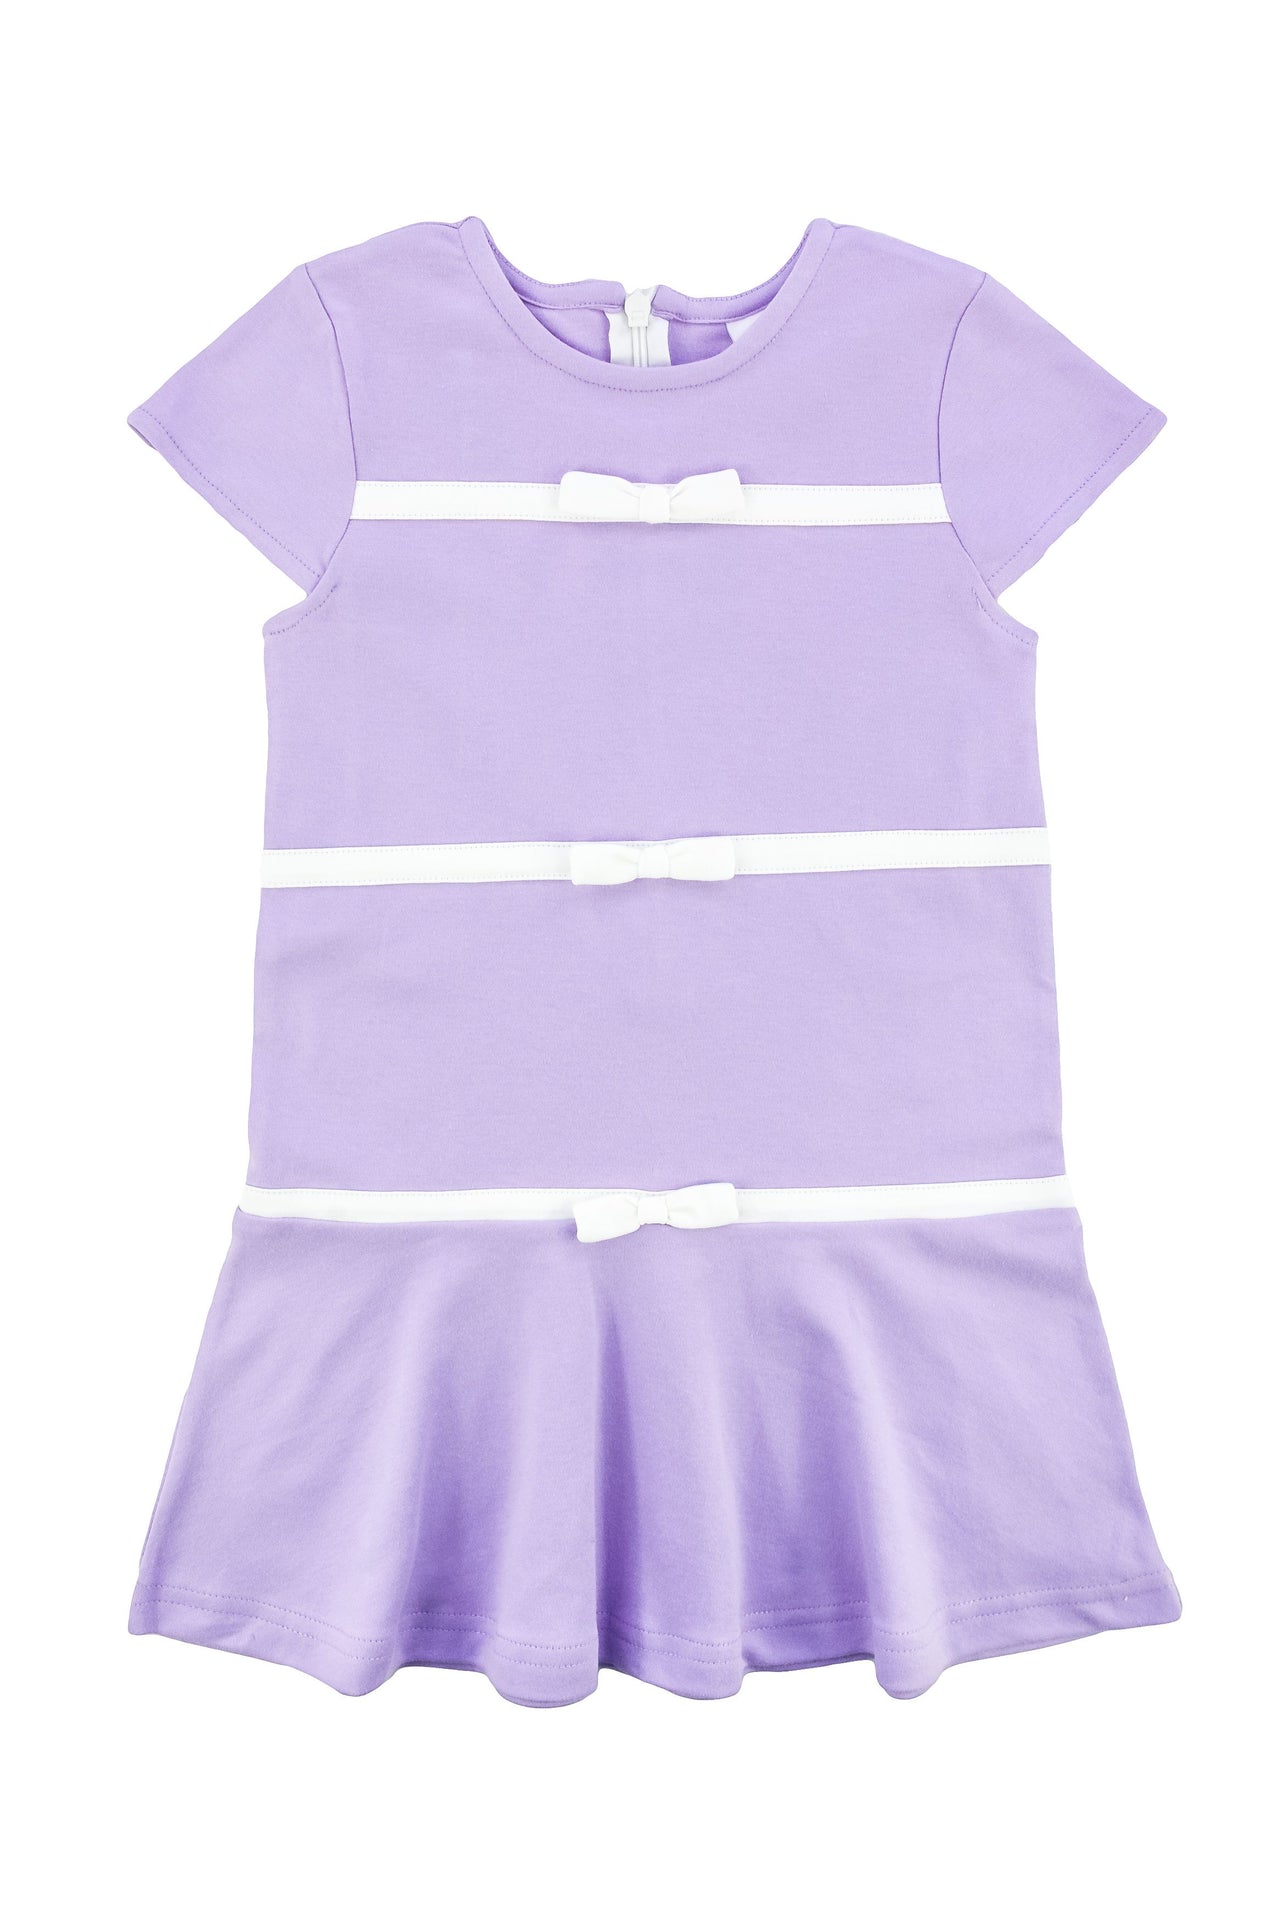 Florence Eiseman Lavender Knit Dress W/Bows C5214 5011